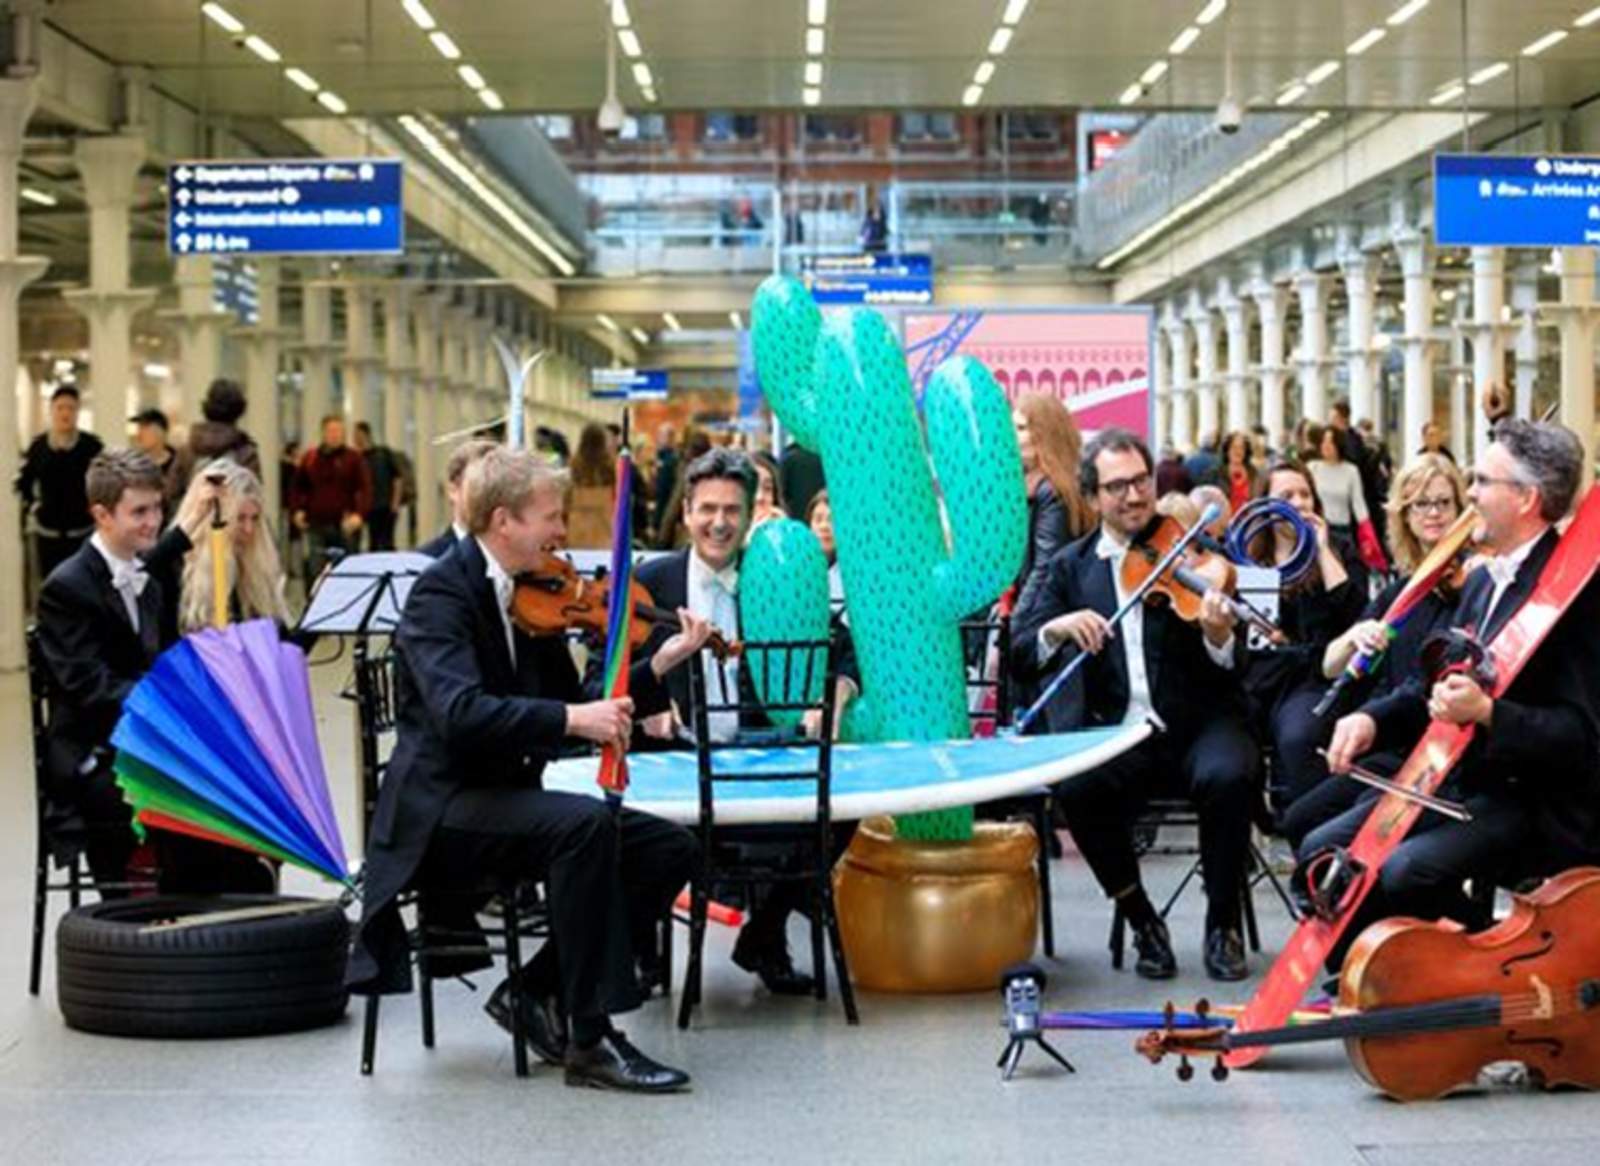 Orquesta ofrece concierto con objetos olvidados en trenes